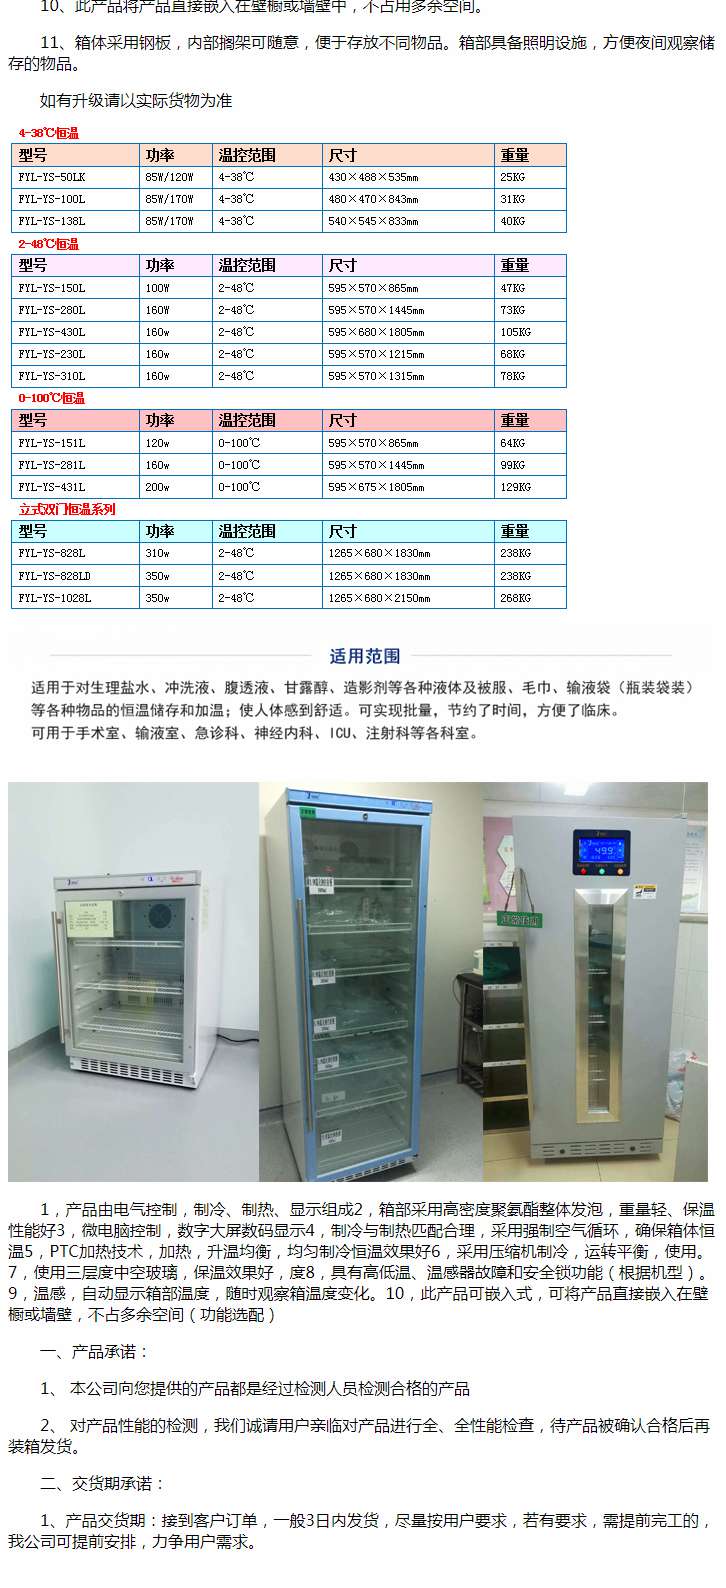 医用冷藏箱药房冷藏药品储备，有效容积1000升左右